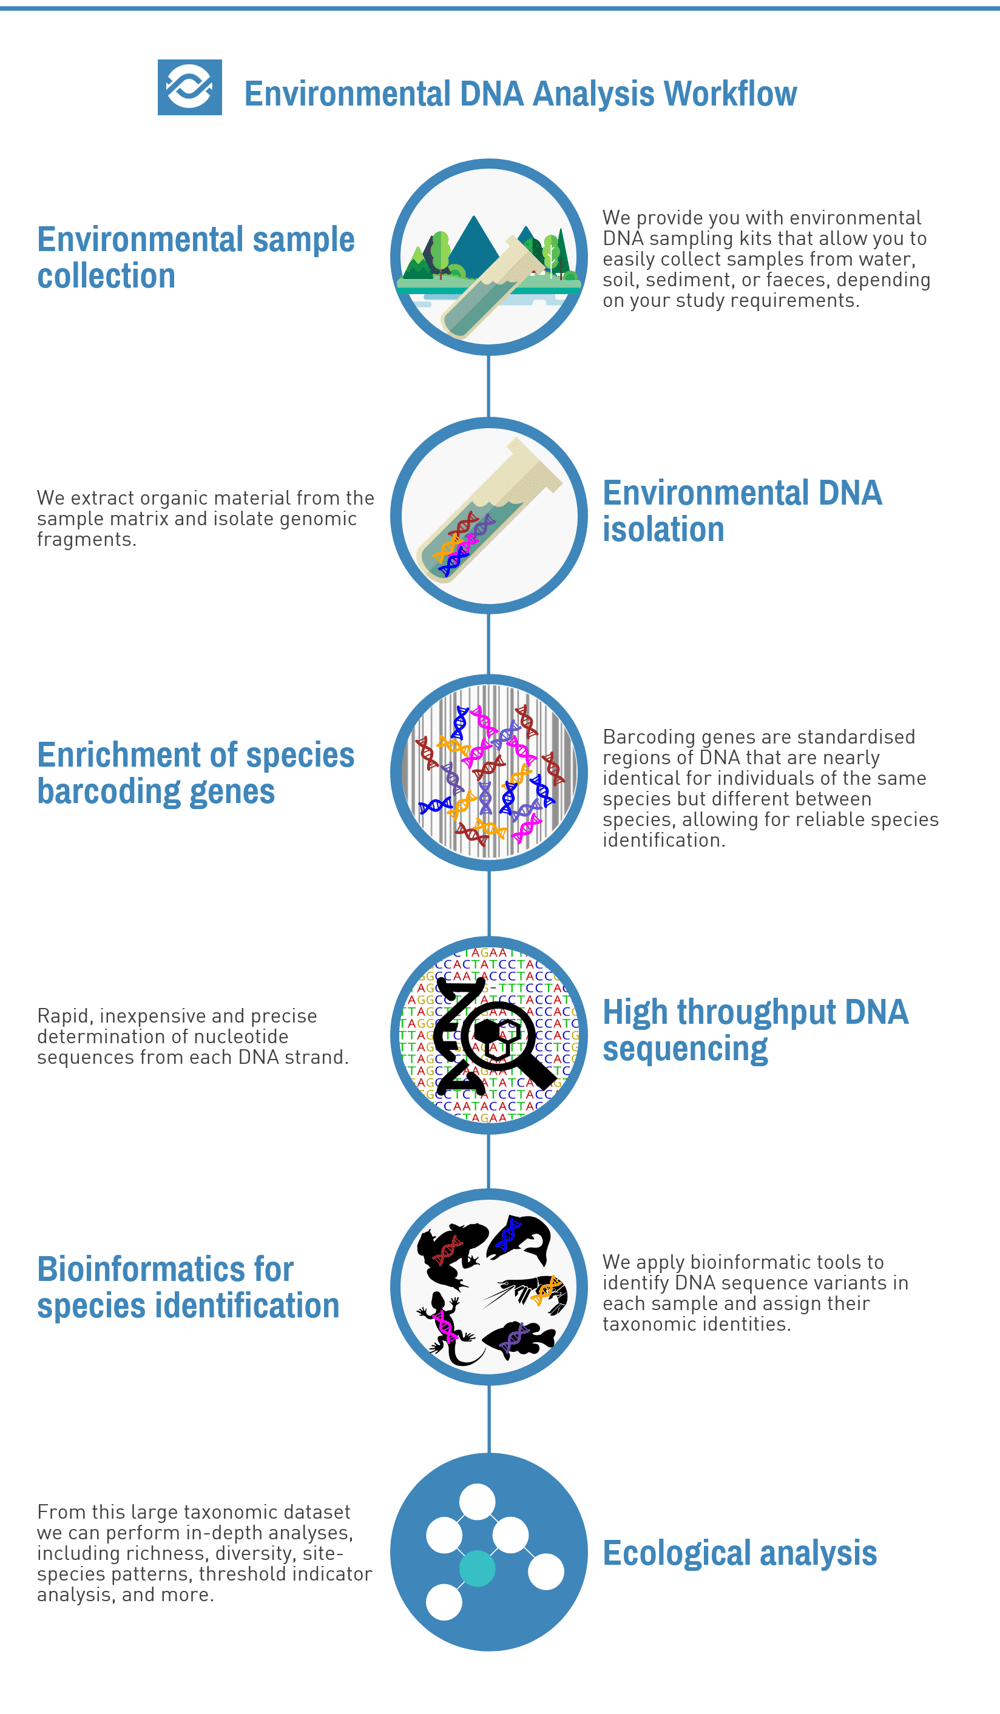 eDNA Analysis Workflow